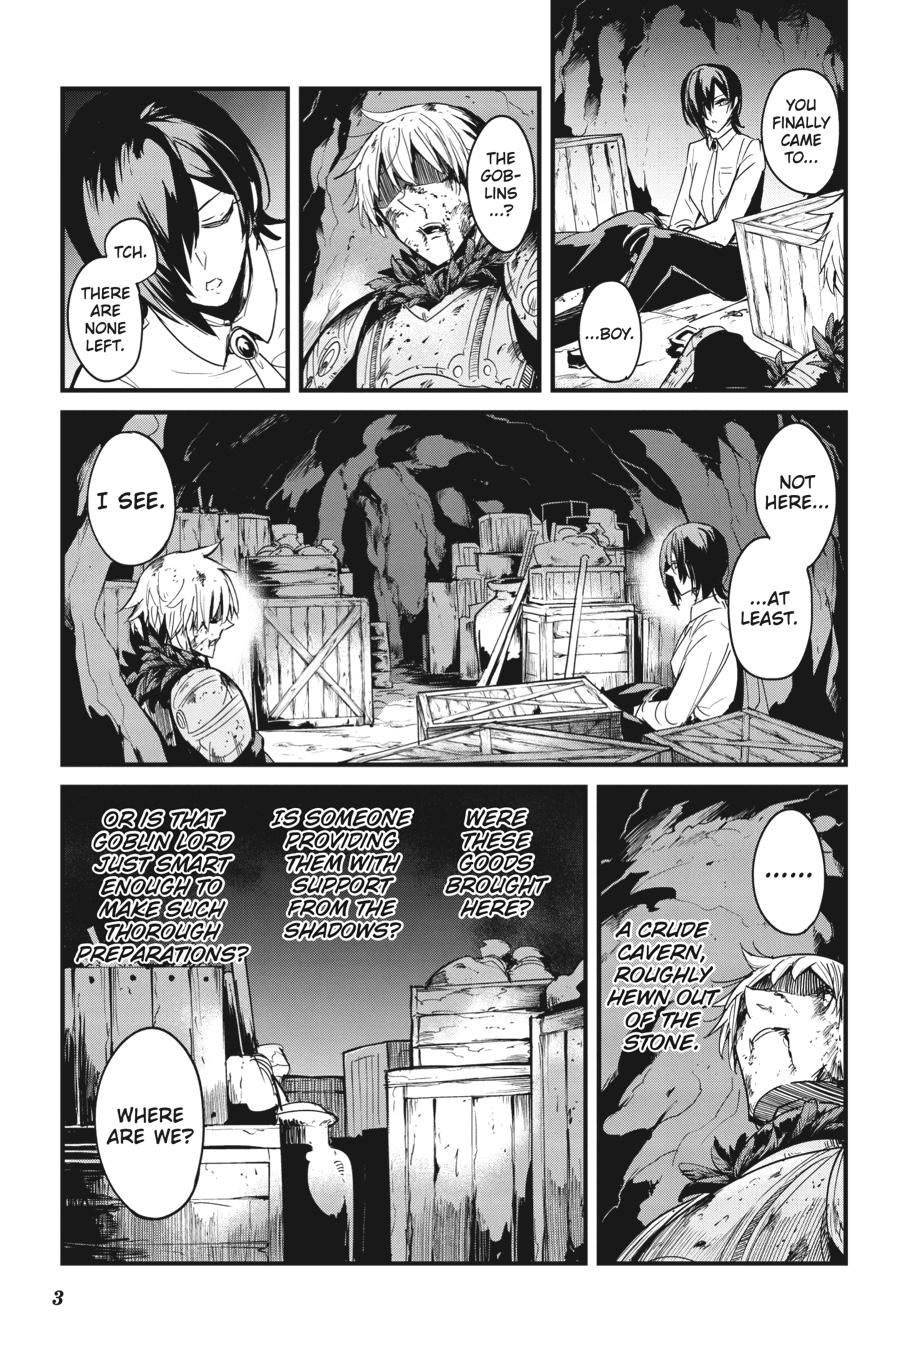 Goblin Slayer Ch.82 Page 17 - Mangago